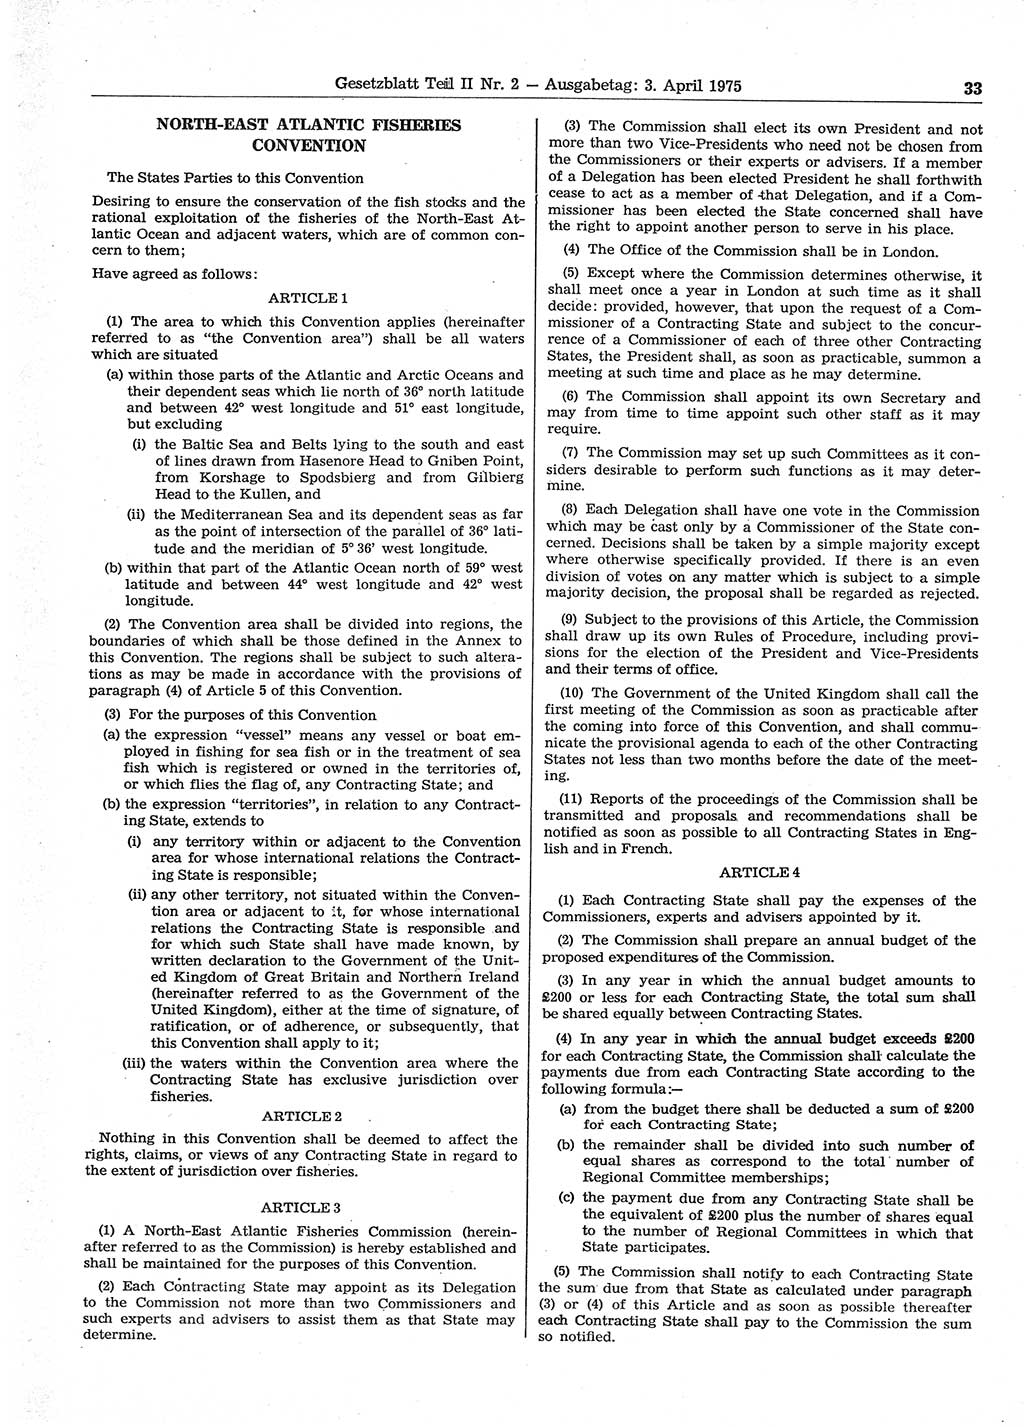 Gesetzblatt (GBl.) der Deutschen Demokratischen Republik (DDR) Teil ⅠⅠ 1975, Seite 33 (GBl. DDR ⅠⅠ 1975, S. 33)